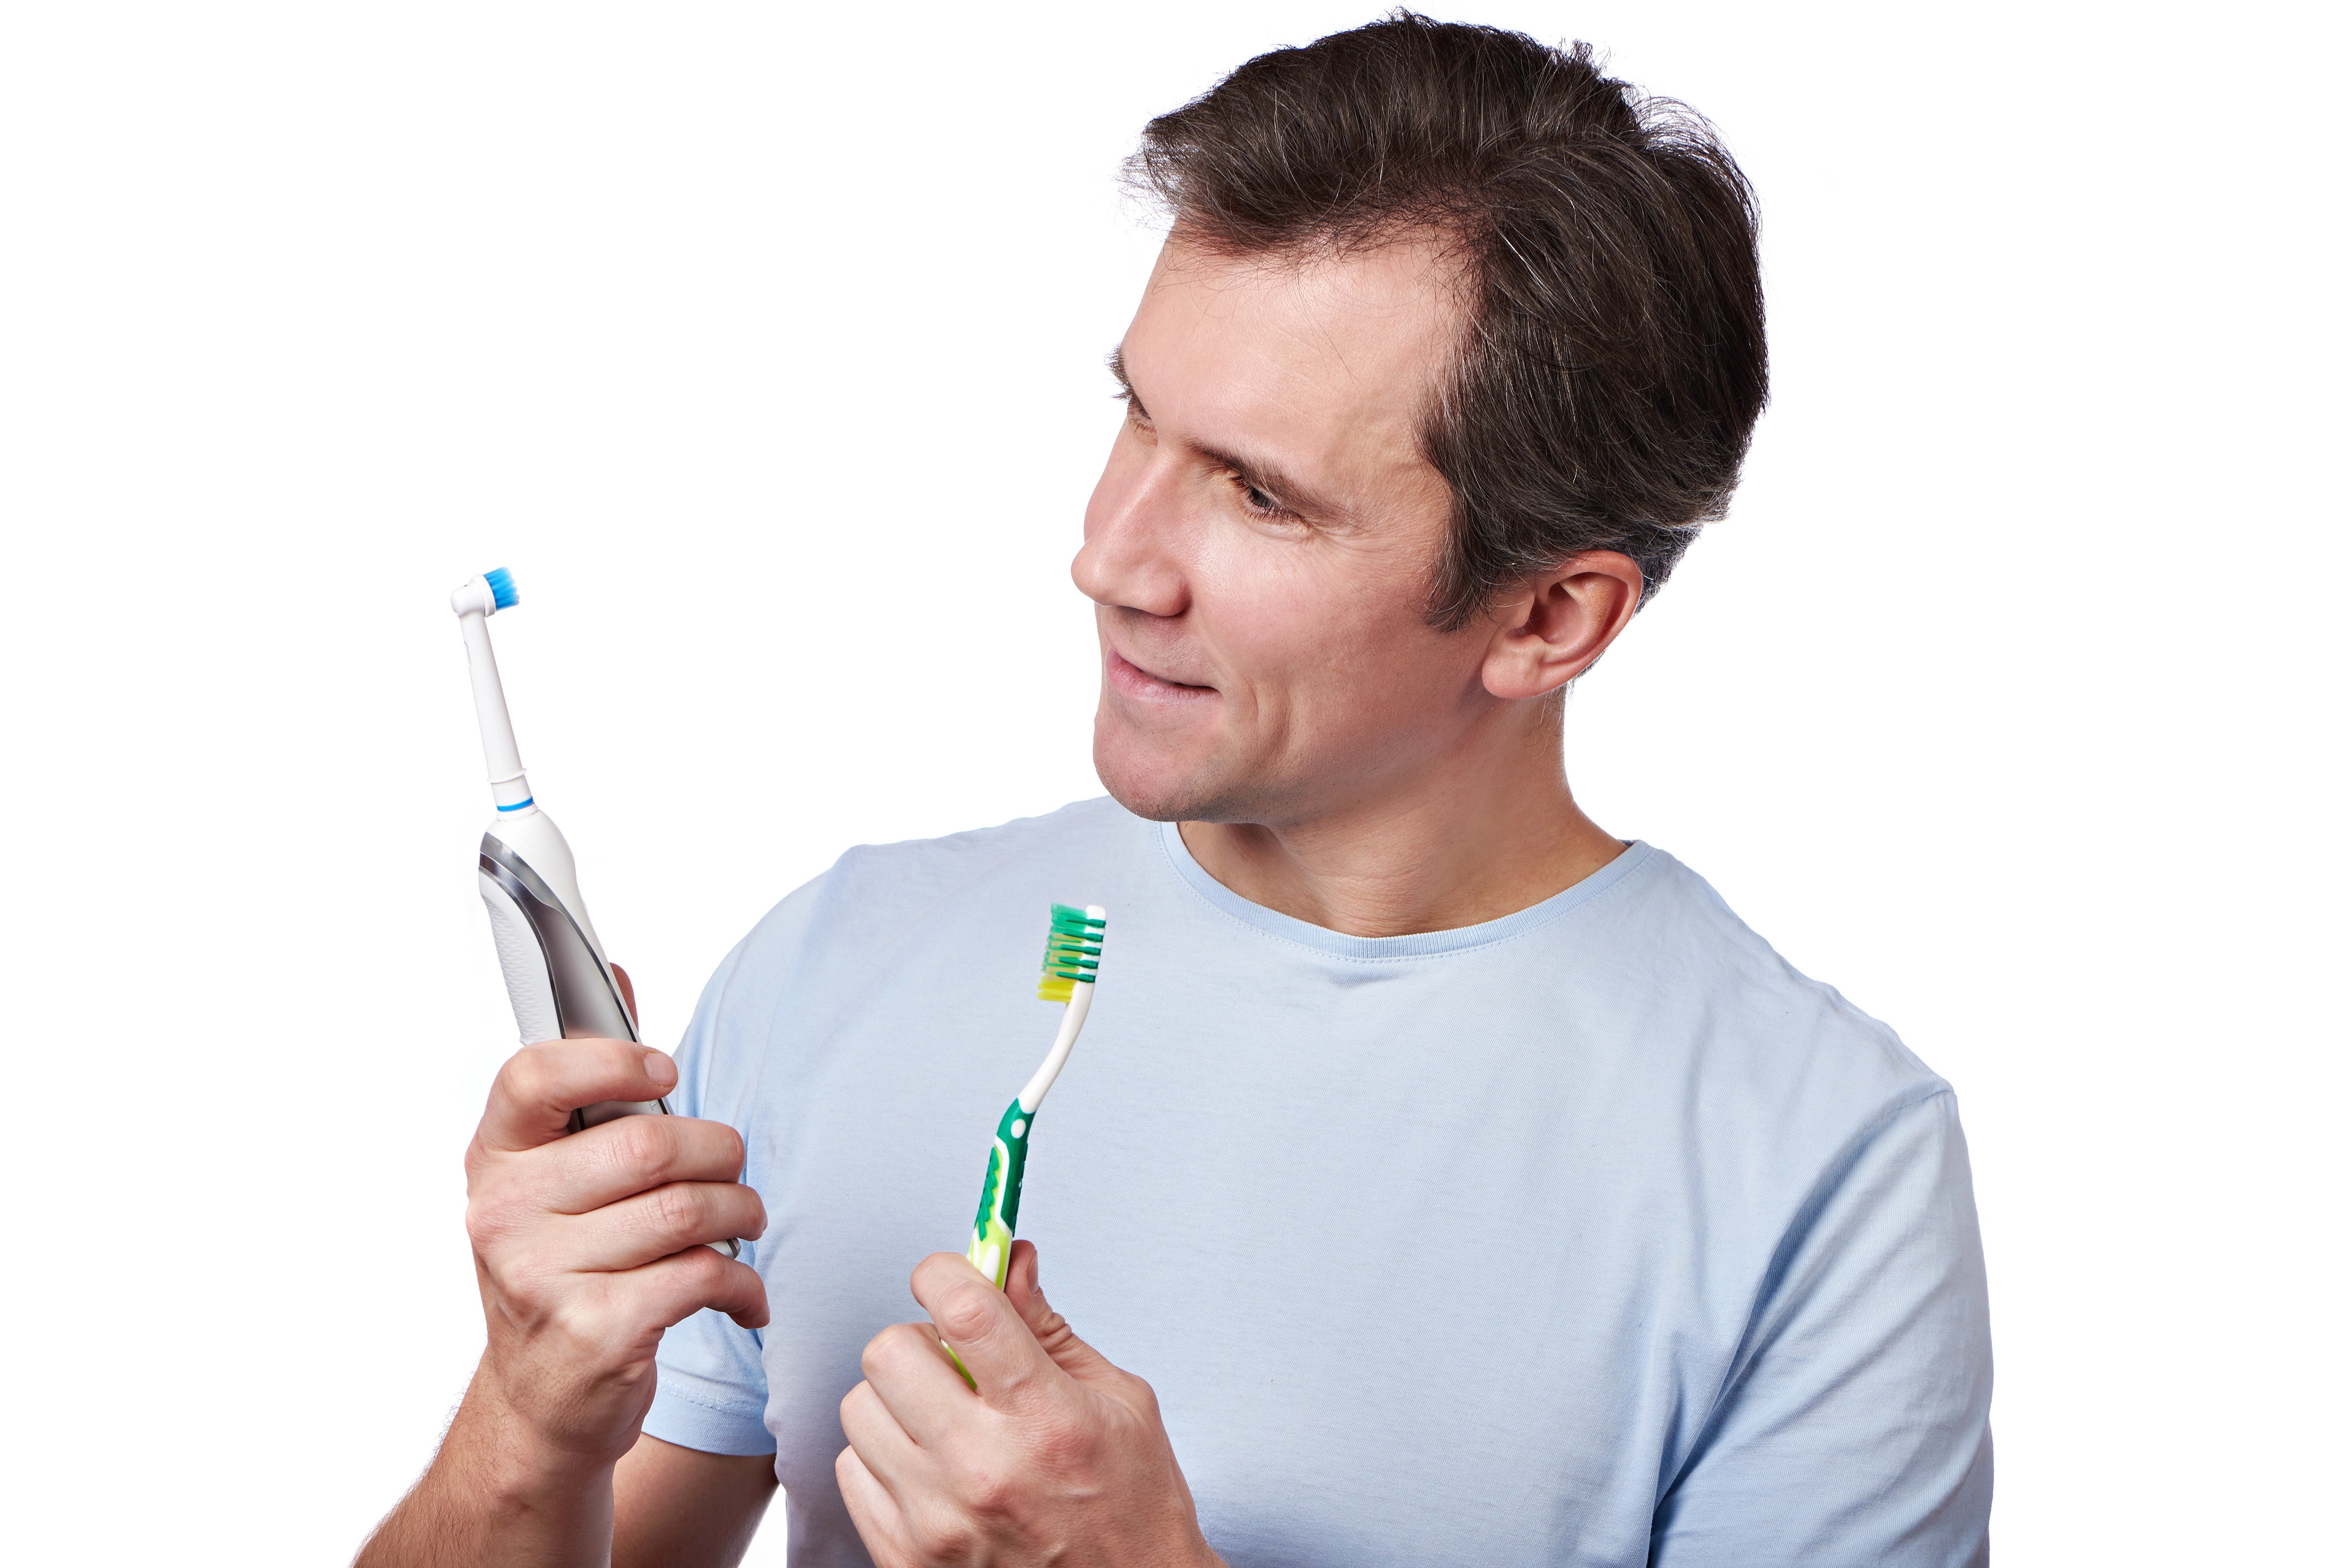 electric toothbrush vs manual toothbrush reddit